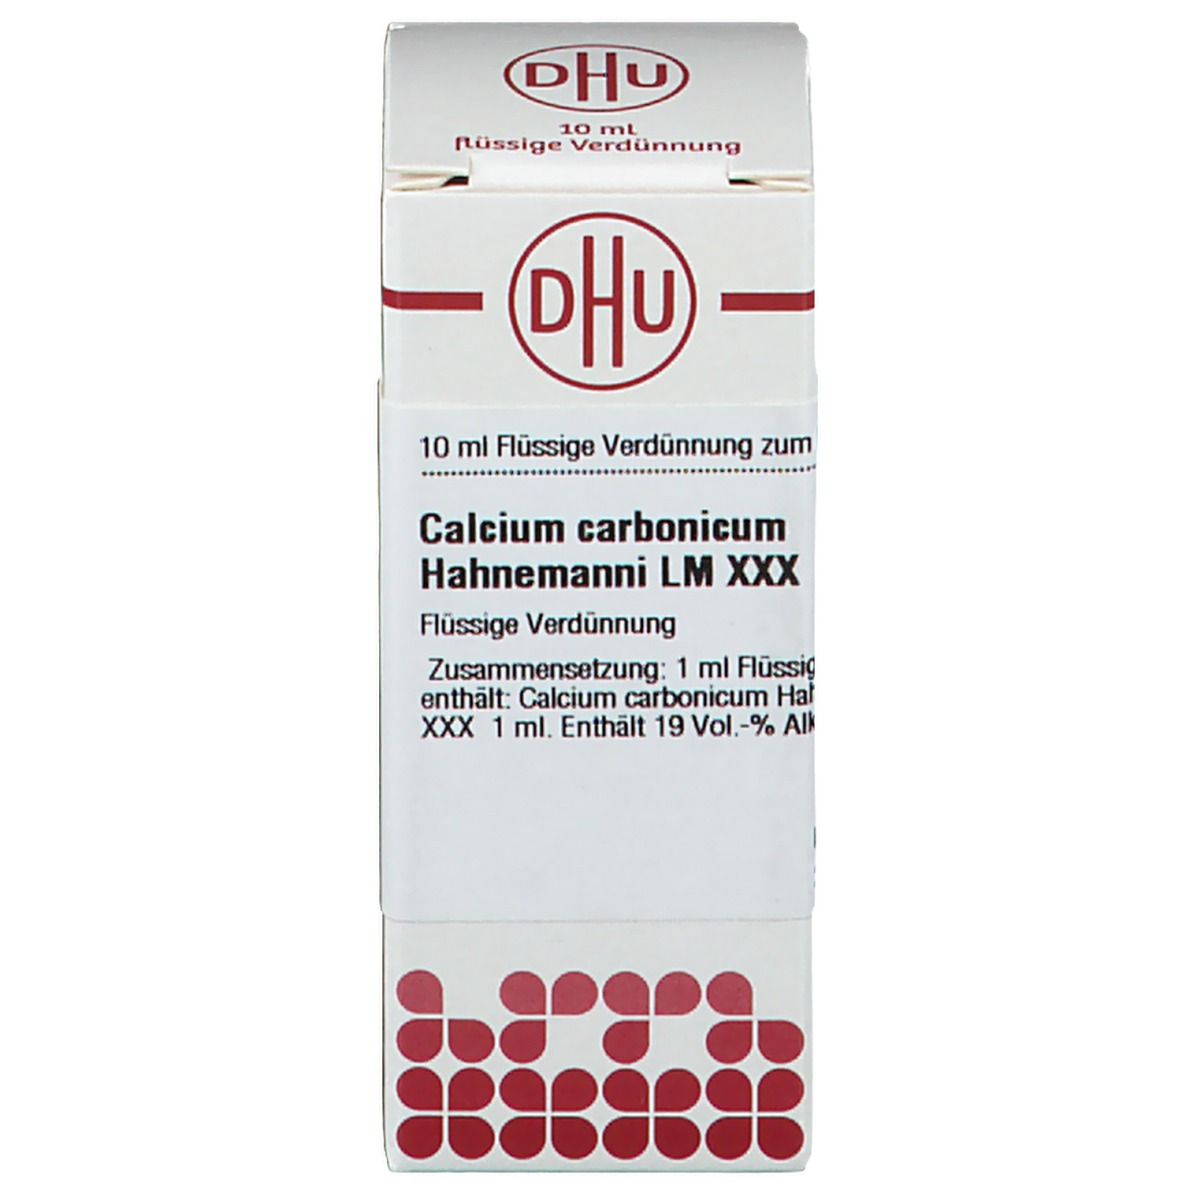 DHU Calcium Carbonicum Hahnemanni Lm XXX